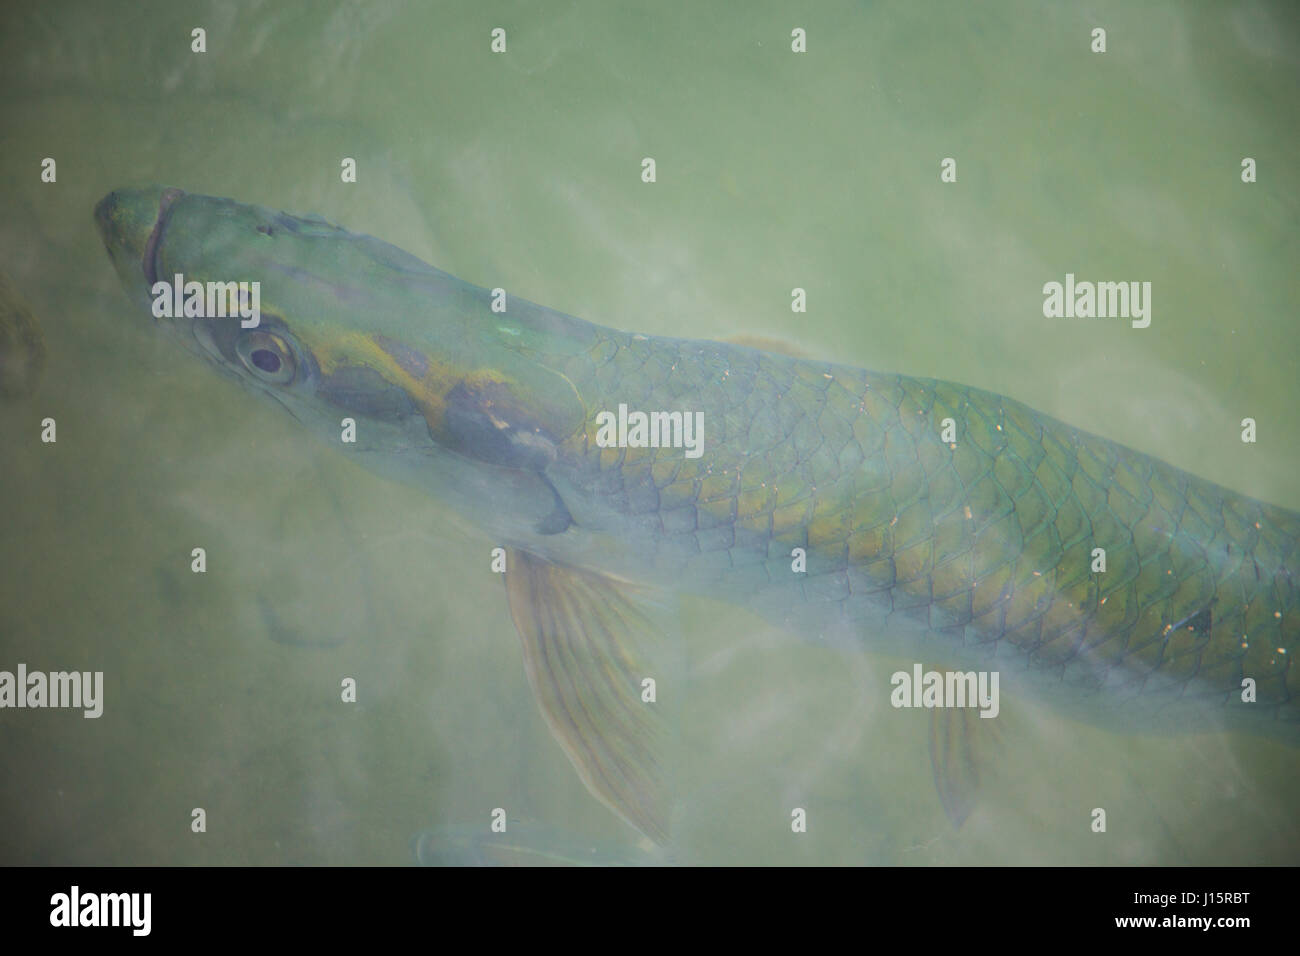 Foto artistiche di Tarpon pesce appena al di sotto della superficie, un fly Fisherman's dream! Foto Stock